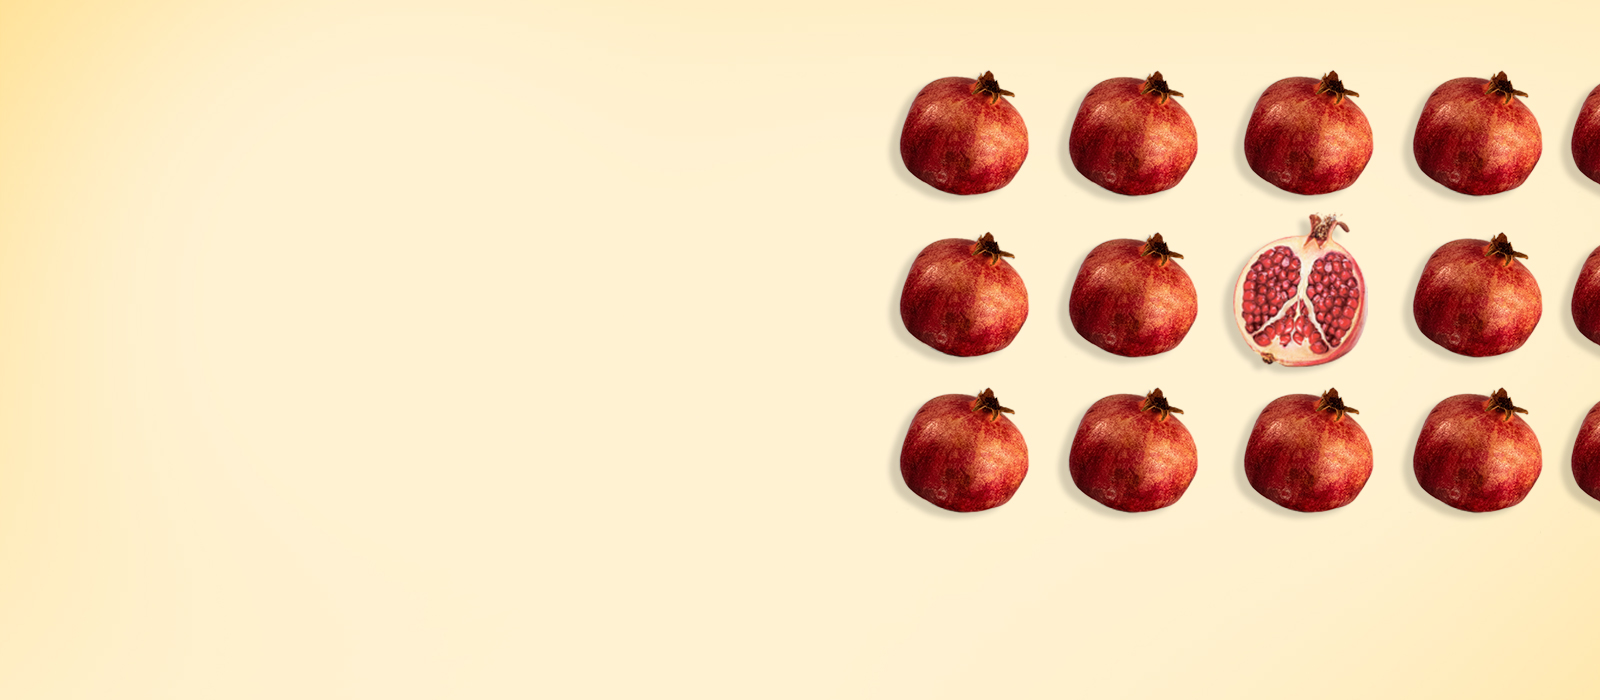 Pomegranate fruit concept